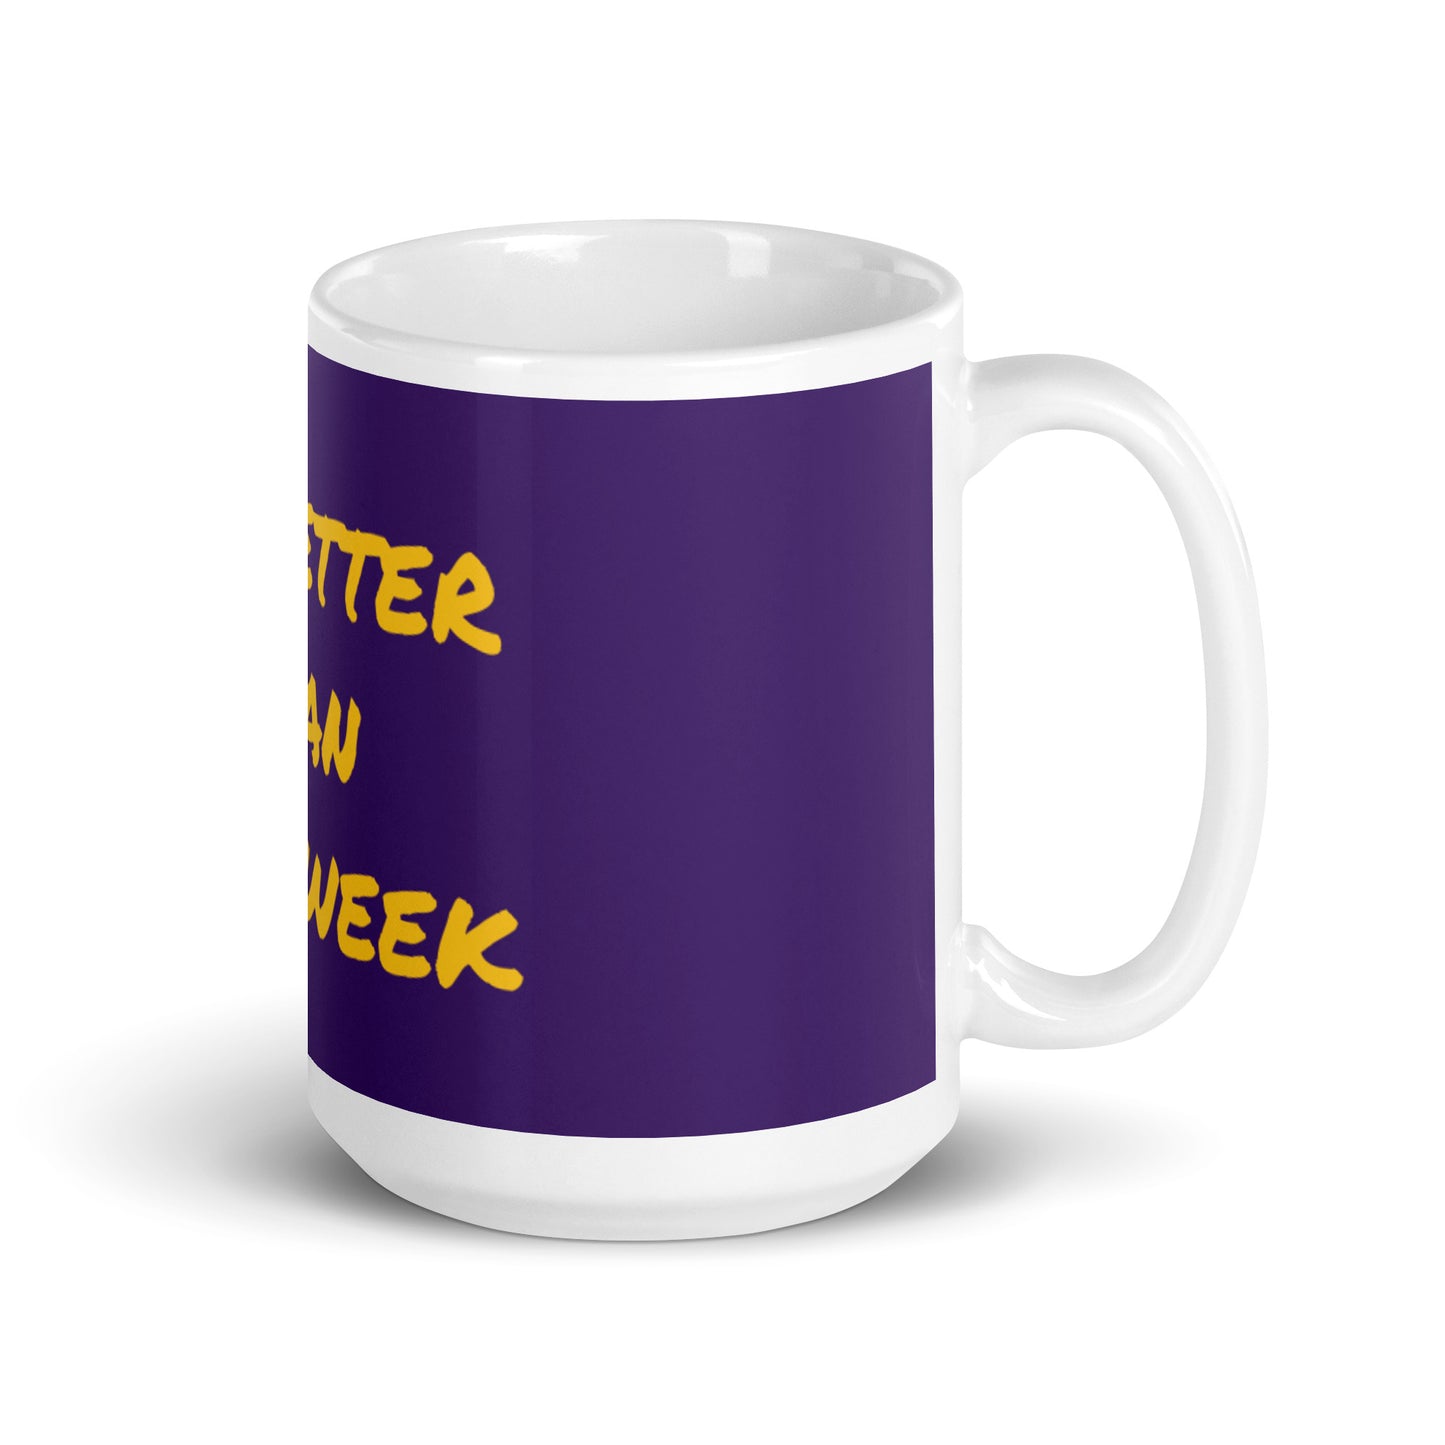 Mug brillant blanc violet - Soyez meilleur que la semaine dernière